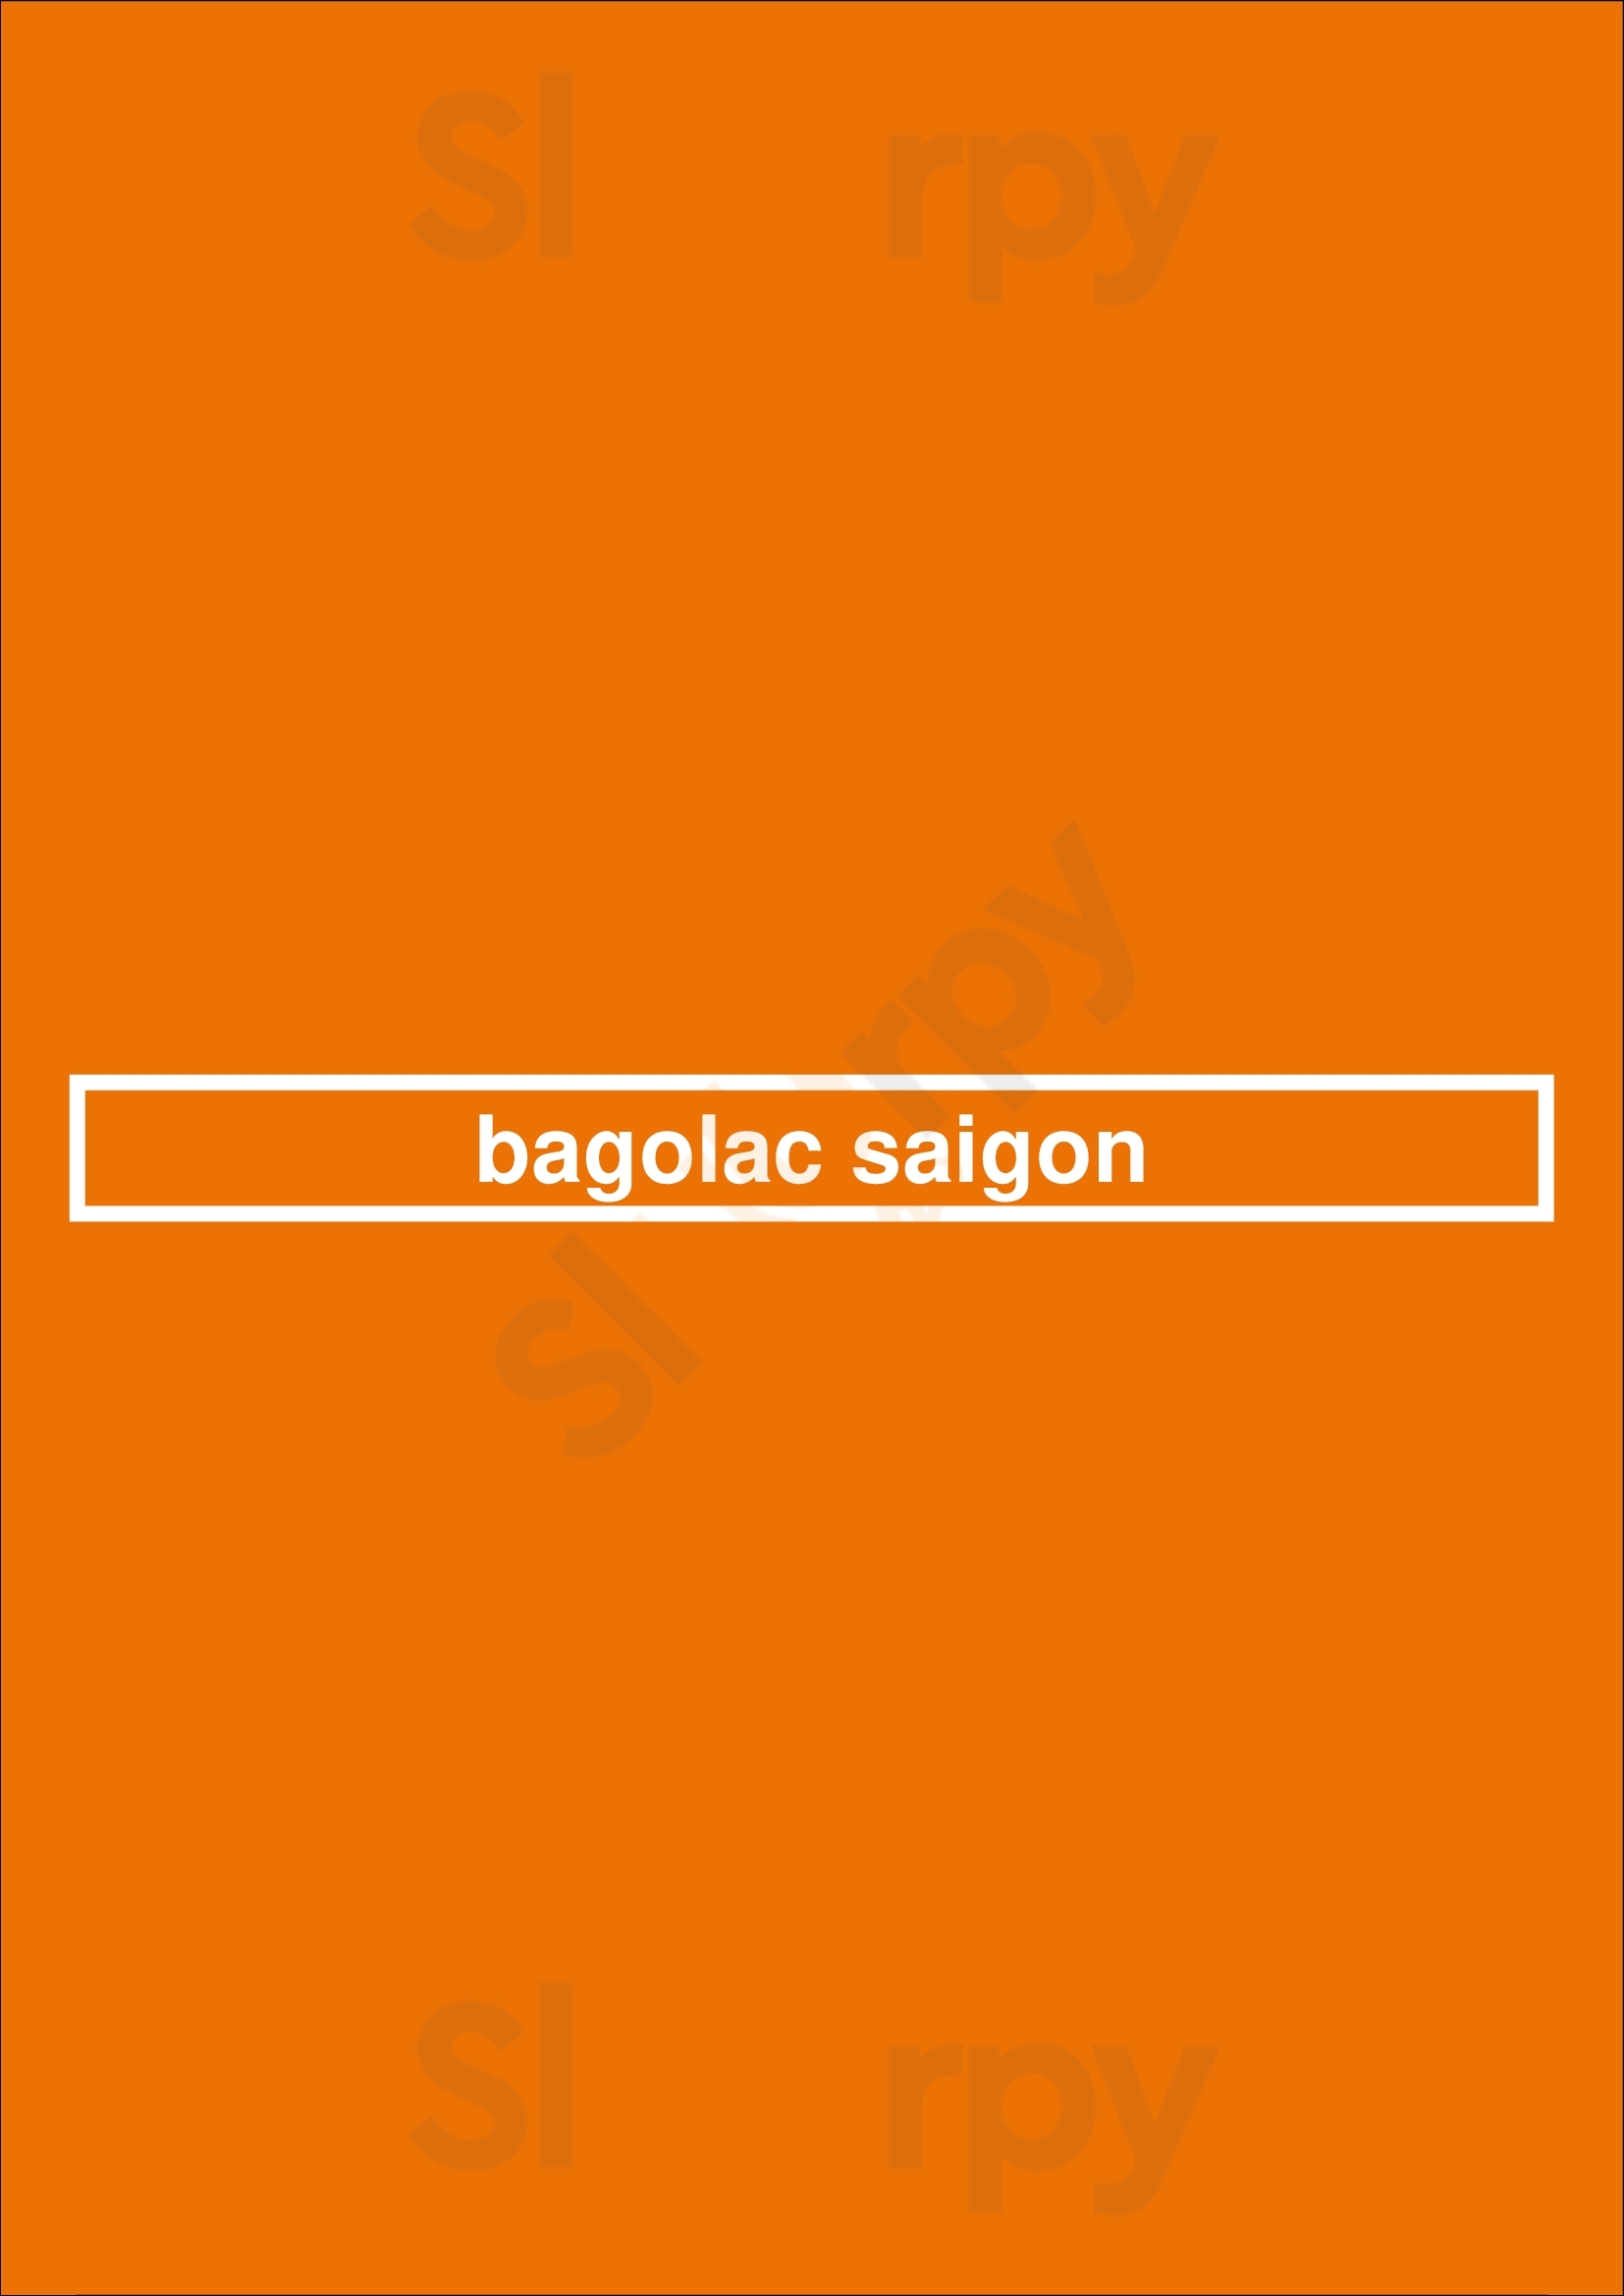 Bagolac Saigon Calgary Menu - 1